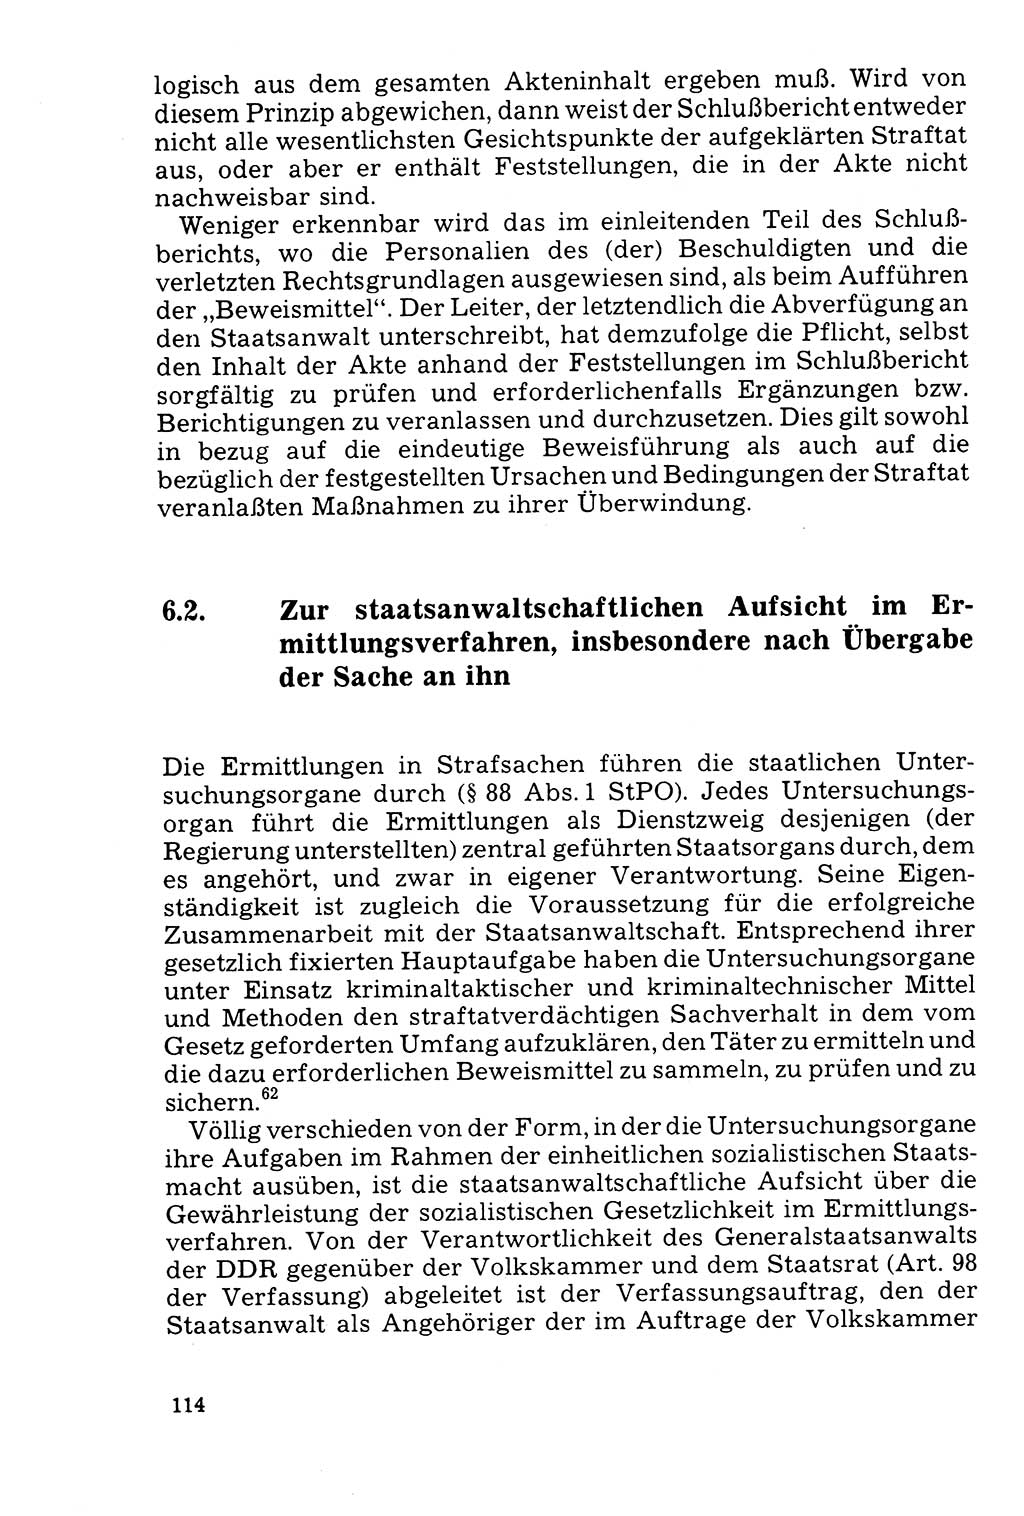 Der Abschluß des Ermittlungsverfahrens [Deutsche Demokratische Republik (DDR)] 1978, Seite 114 (Abschl. EV DDR 1978, S. 114)